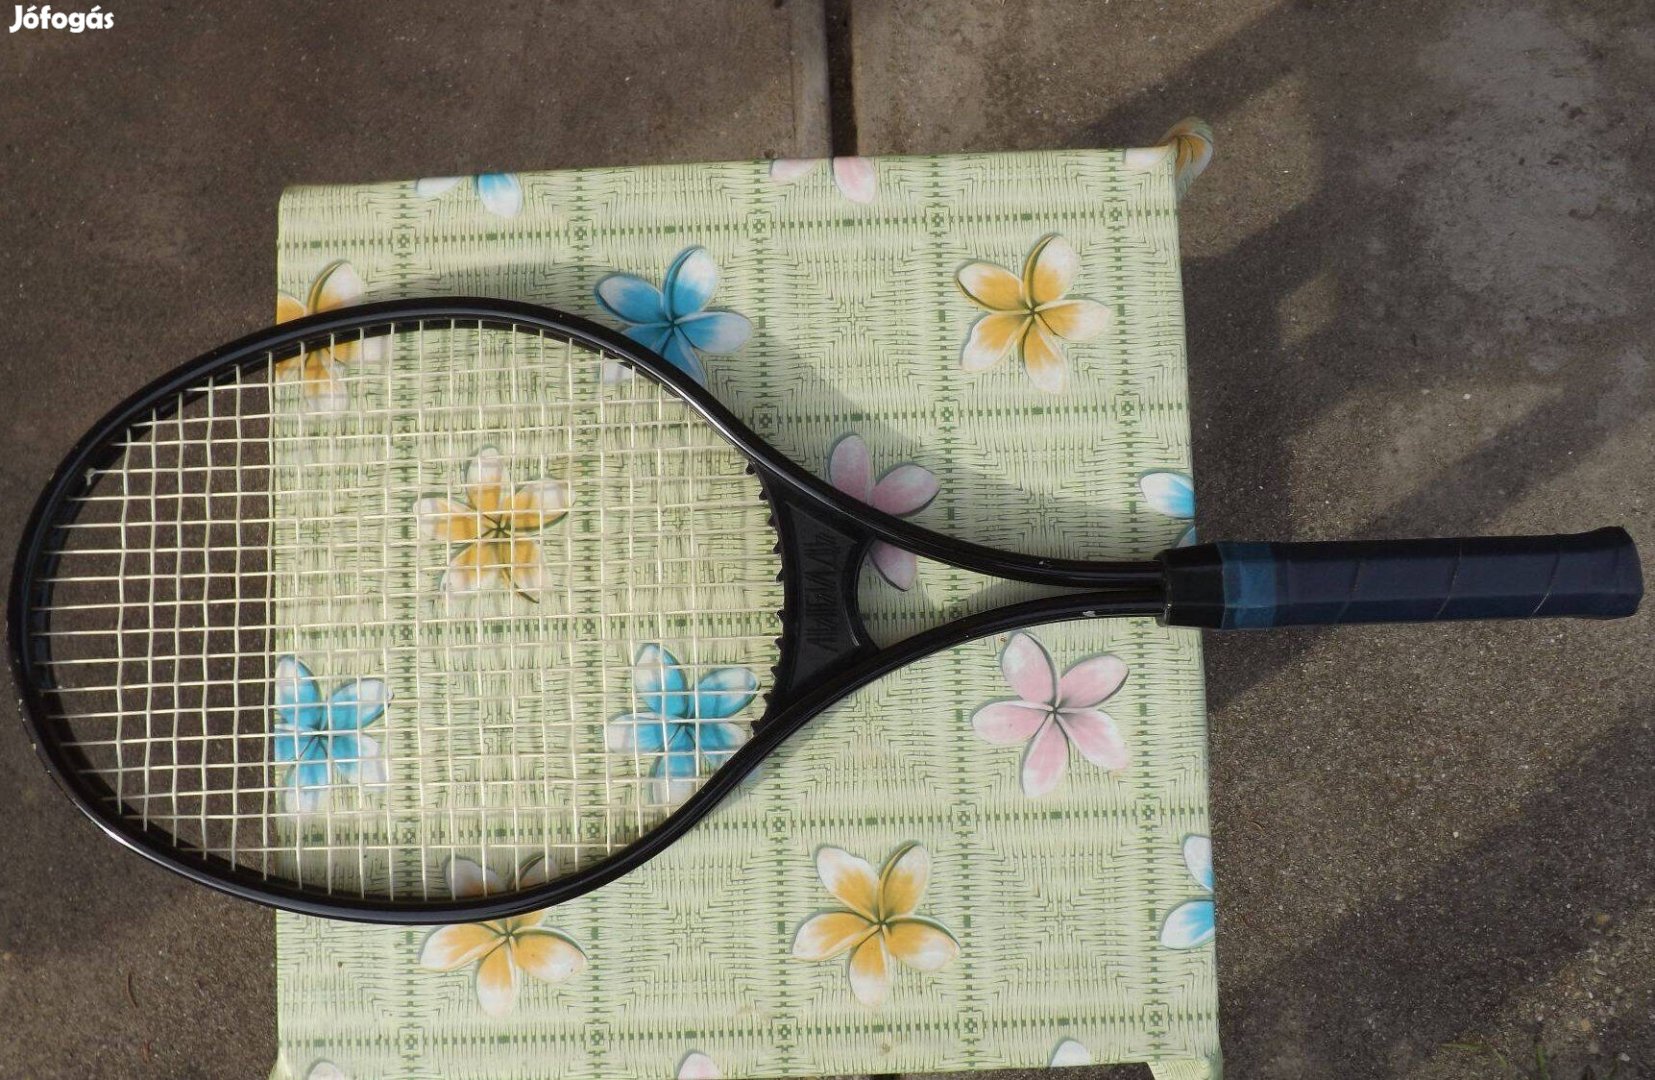 Teniszütő retro nem használt gyütőnek vagy használónak